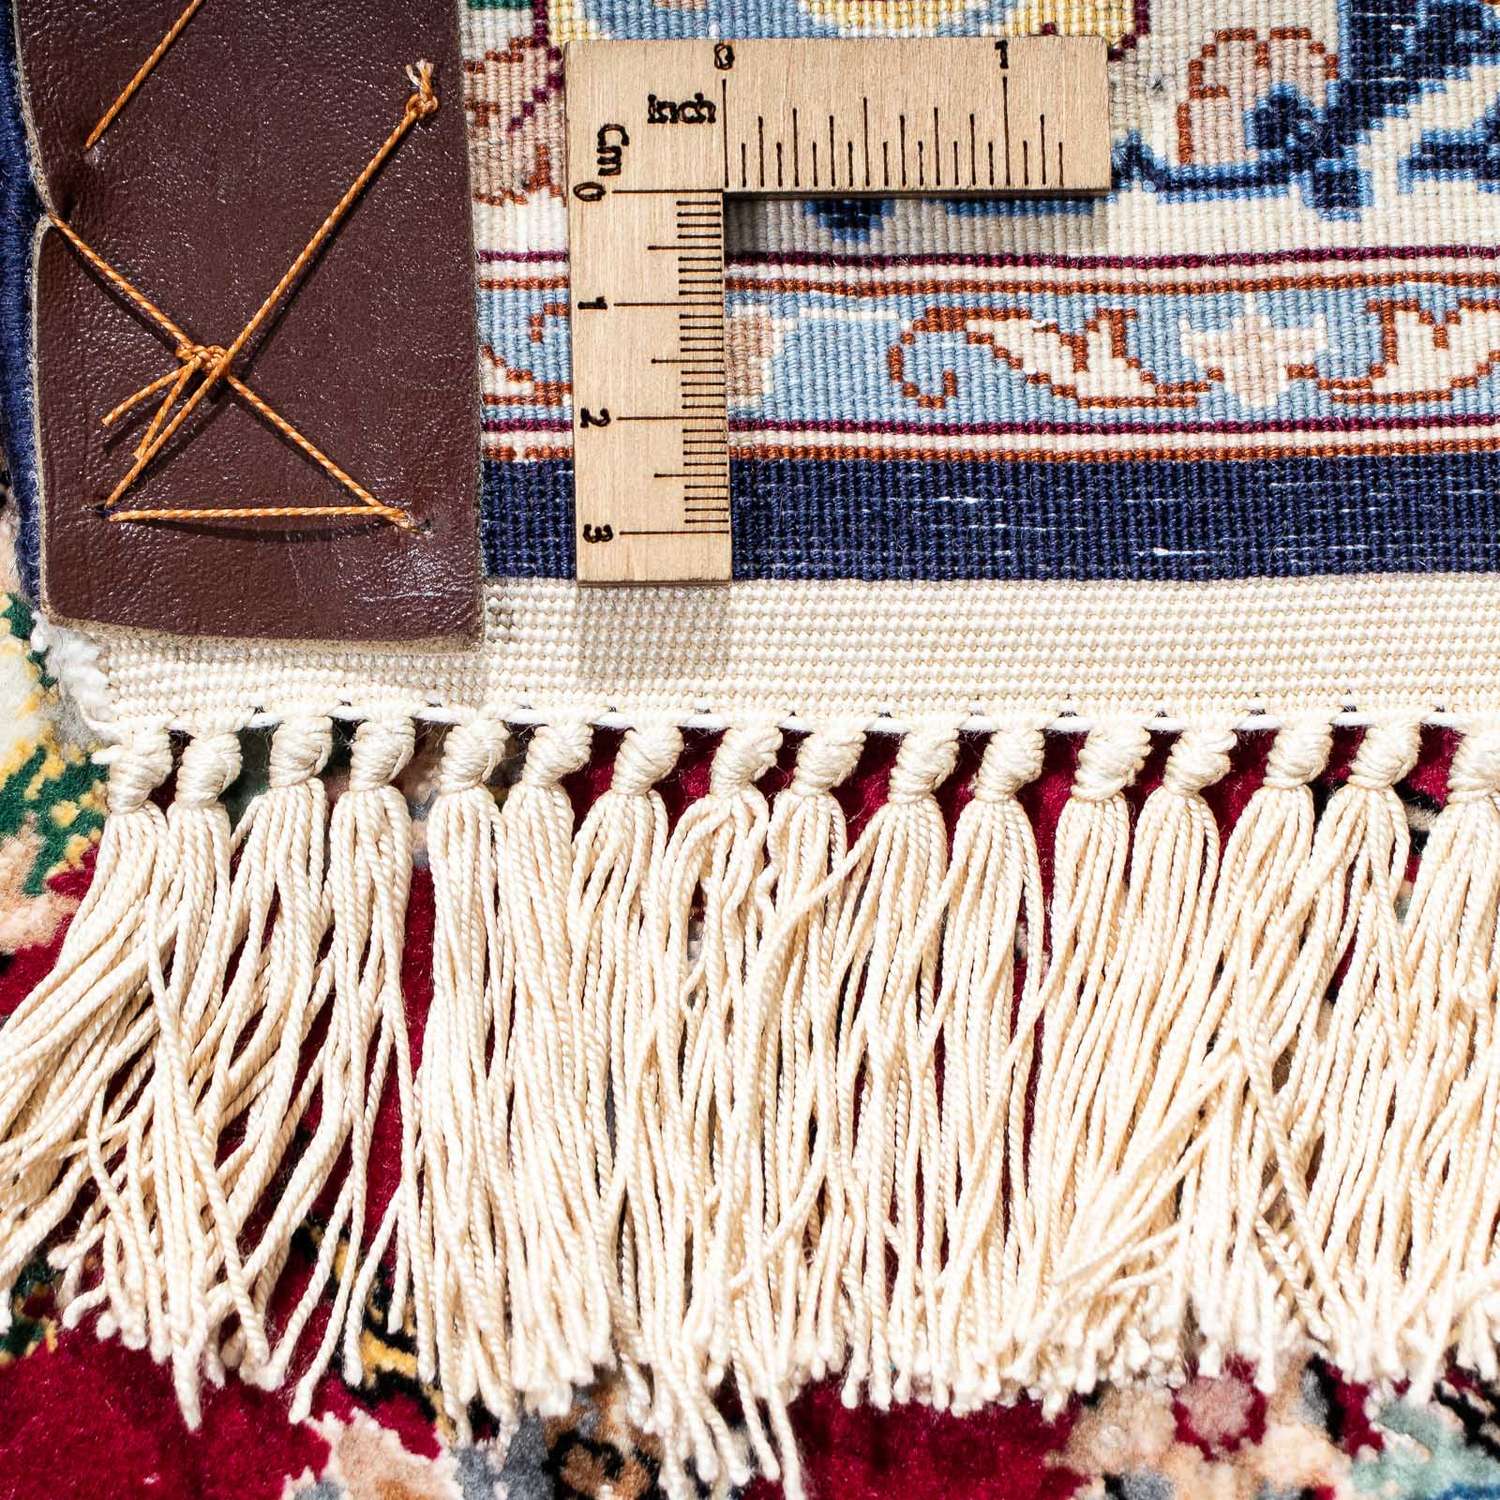 Perský koberec - Isfahán - Premium - 194 x 131 cm - červená